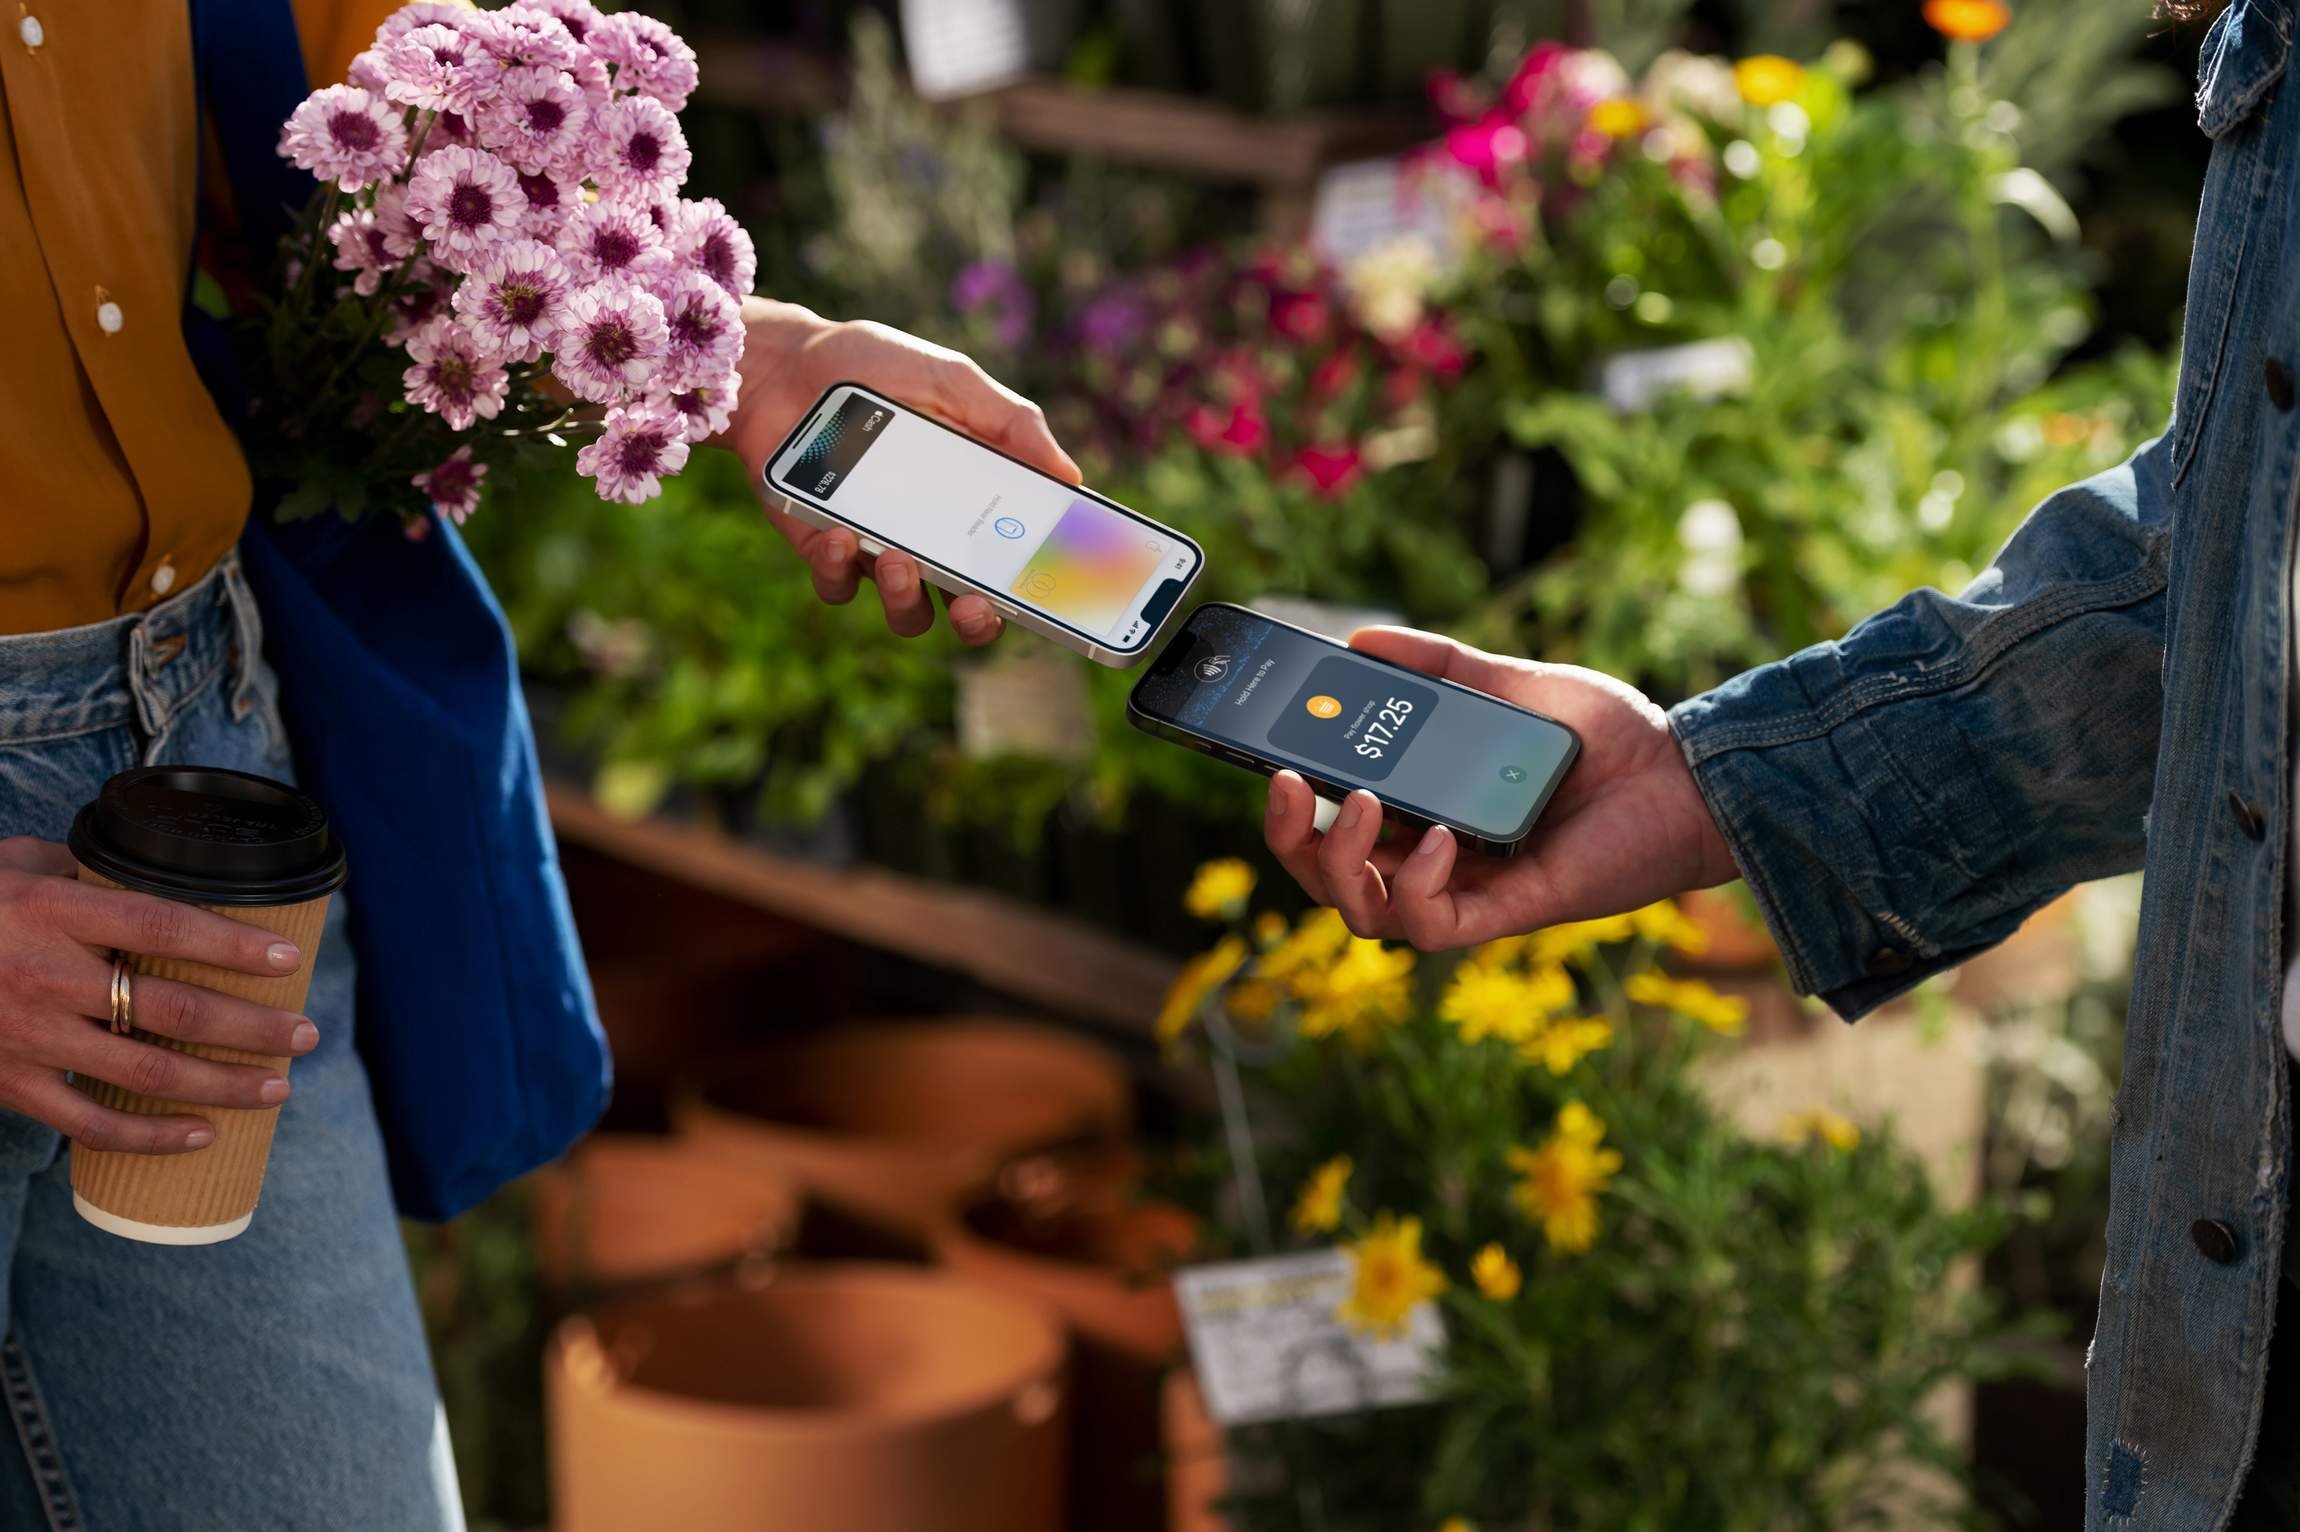  iPhone-urile vor putea fi folosite pe post de terminale de plată cu ajutorul cardului